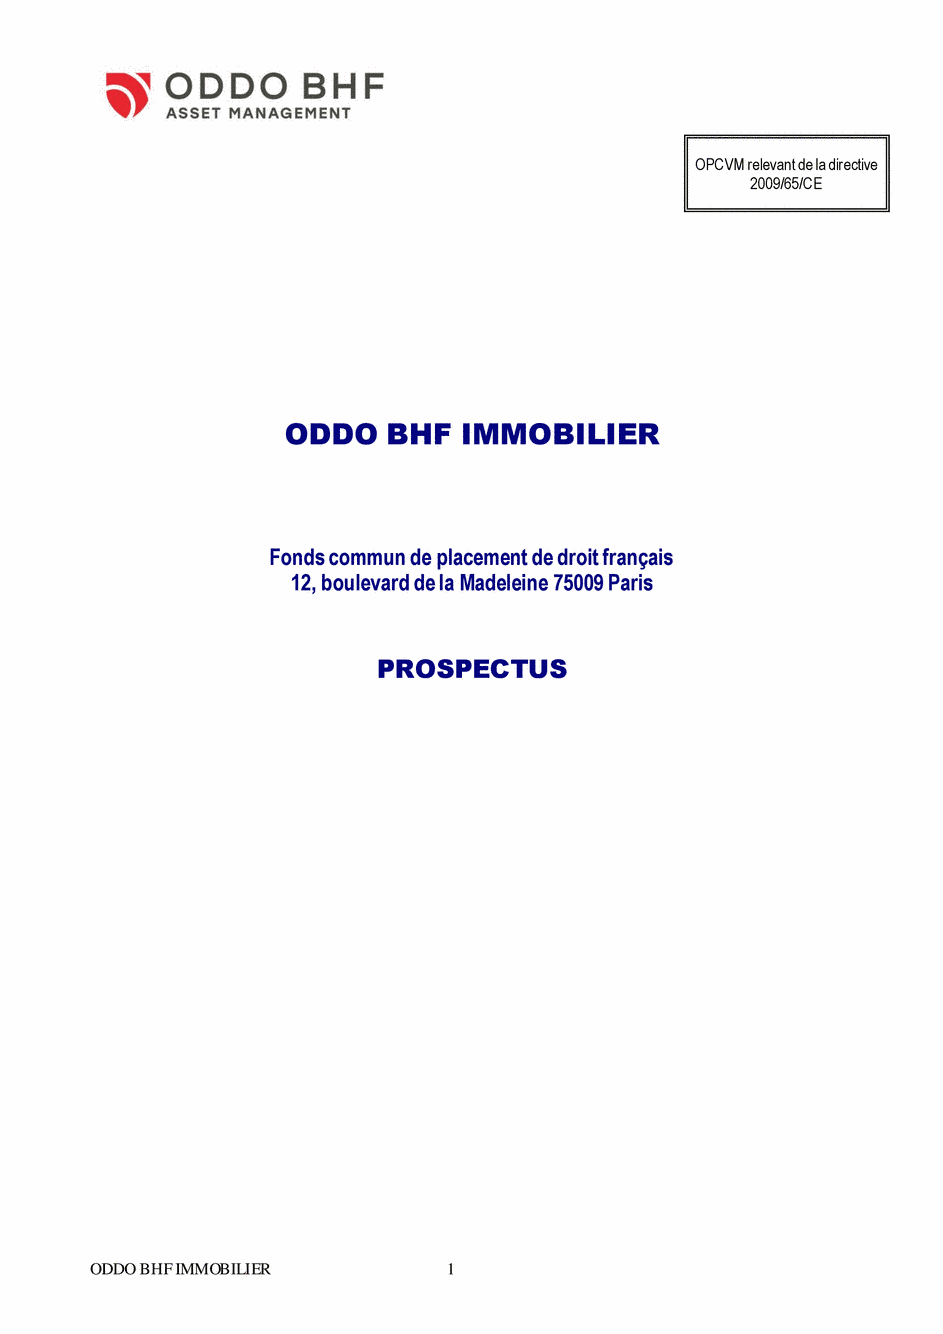 Prospectus ODDO BHF IMMOBILIER CI-EUR - 14/02/2020 - Français